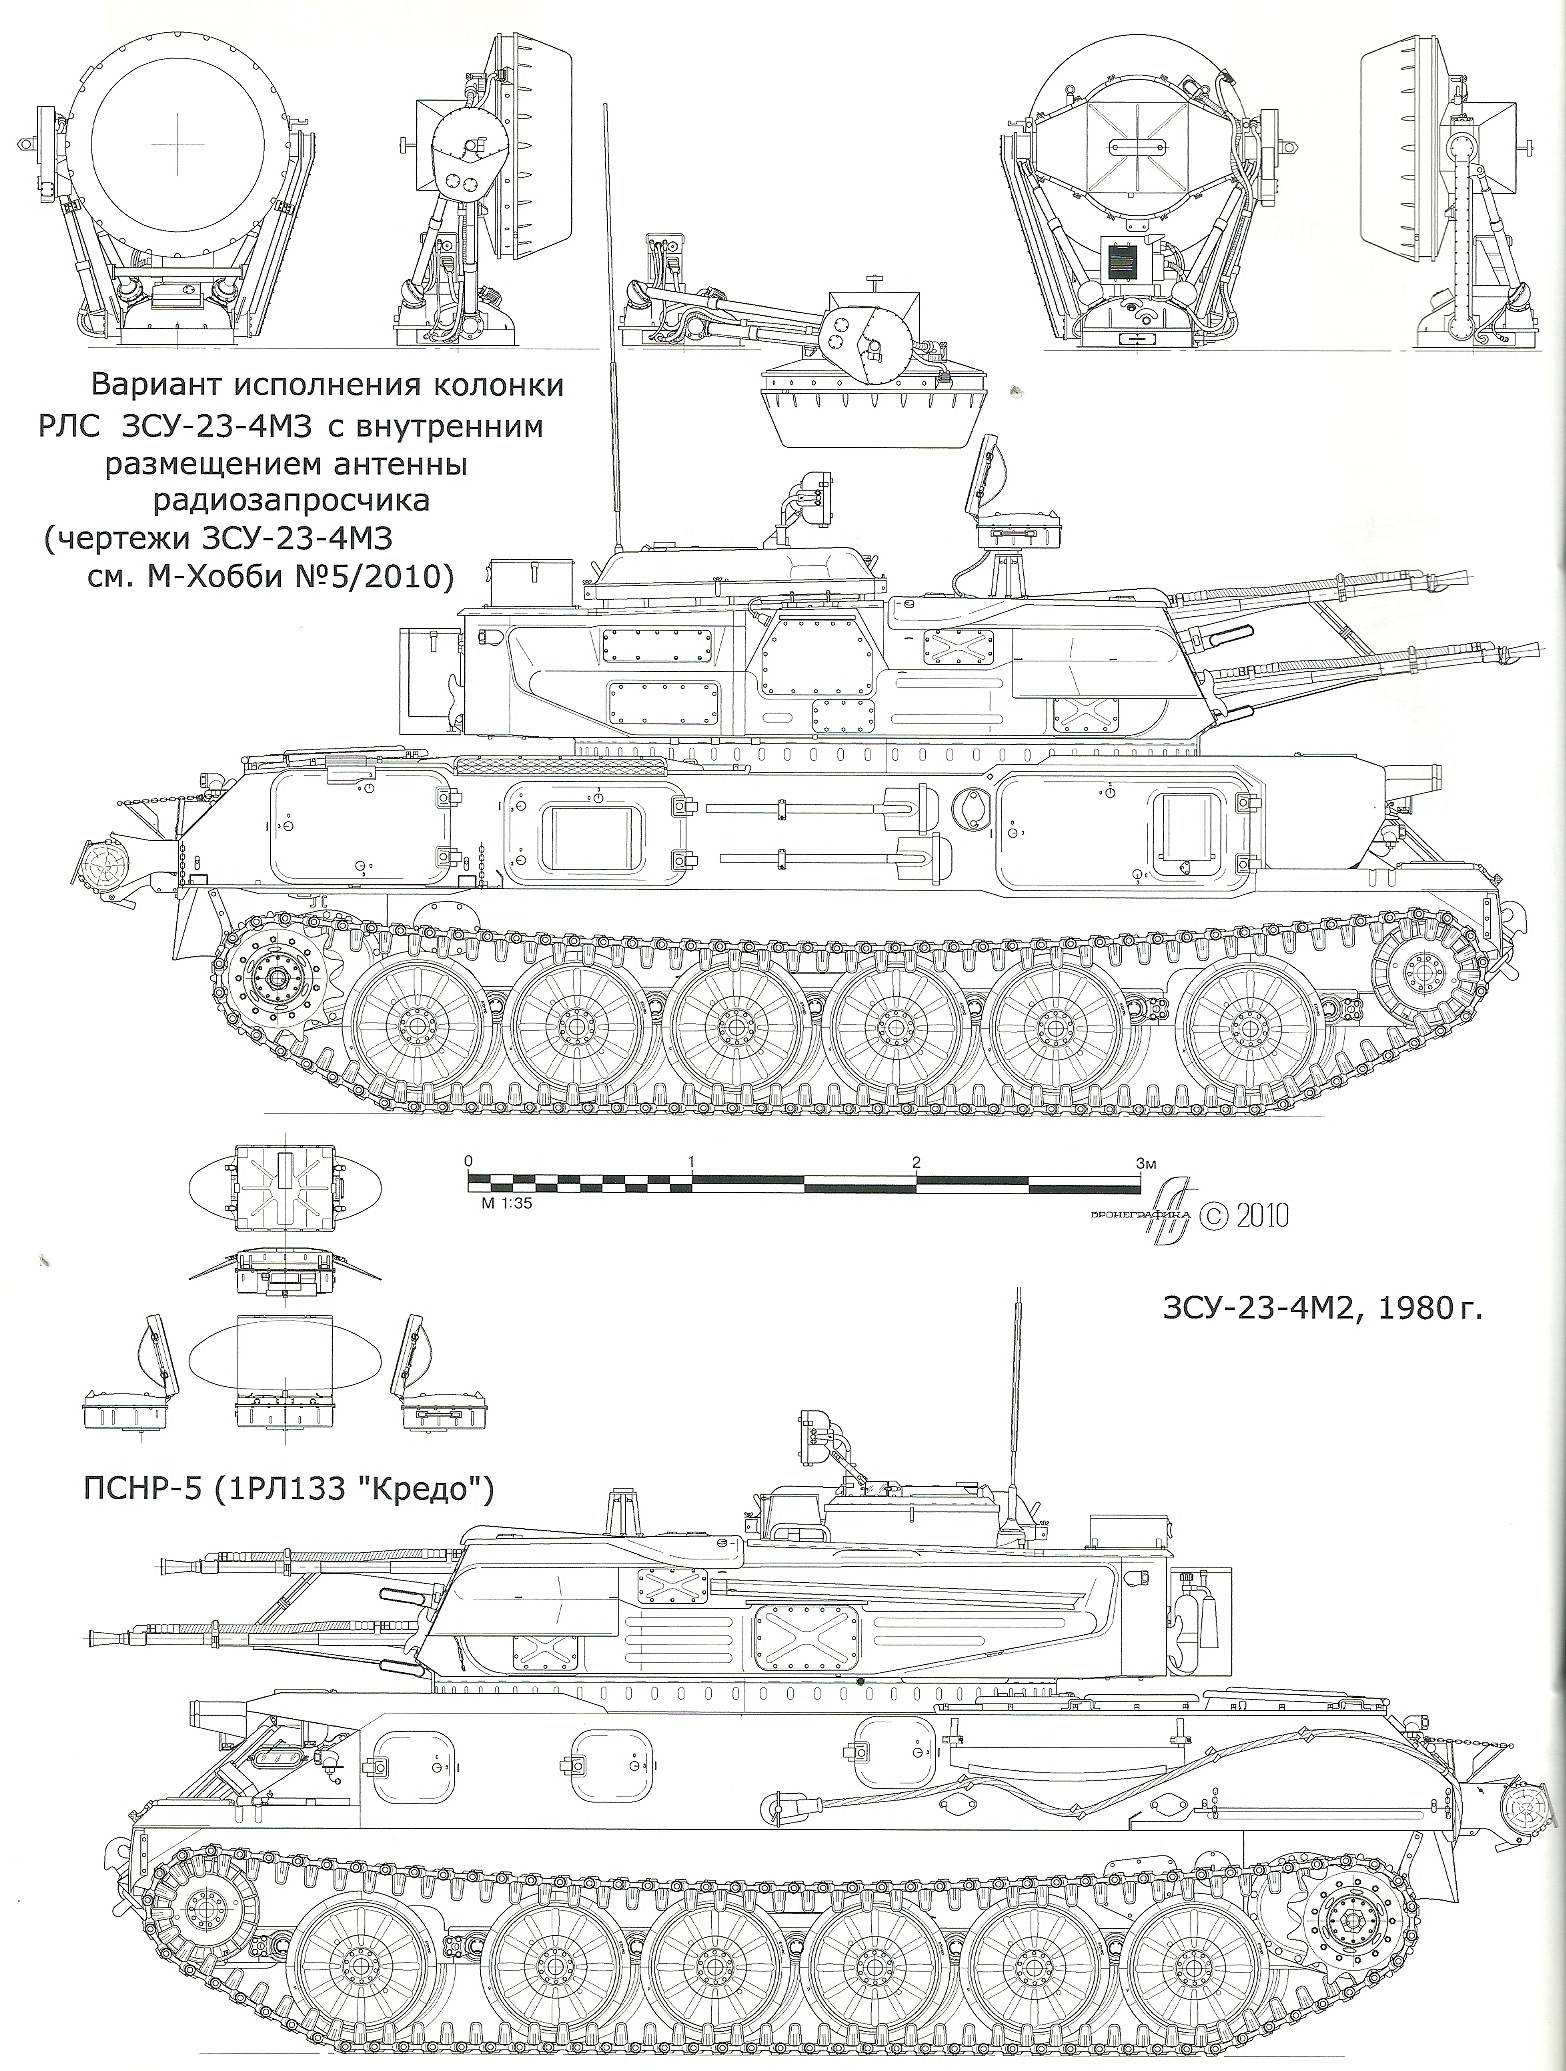 Зсу-23-4 шилка зенитная самоходная установка, технические характеристики ттх и описание комплекса, калибр и скорострельность